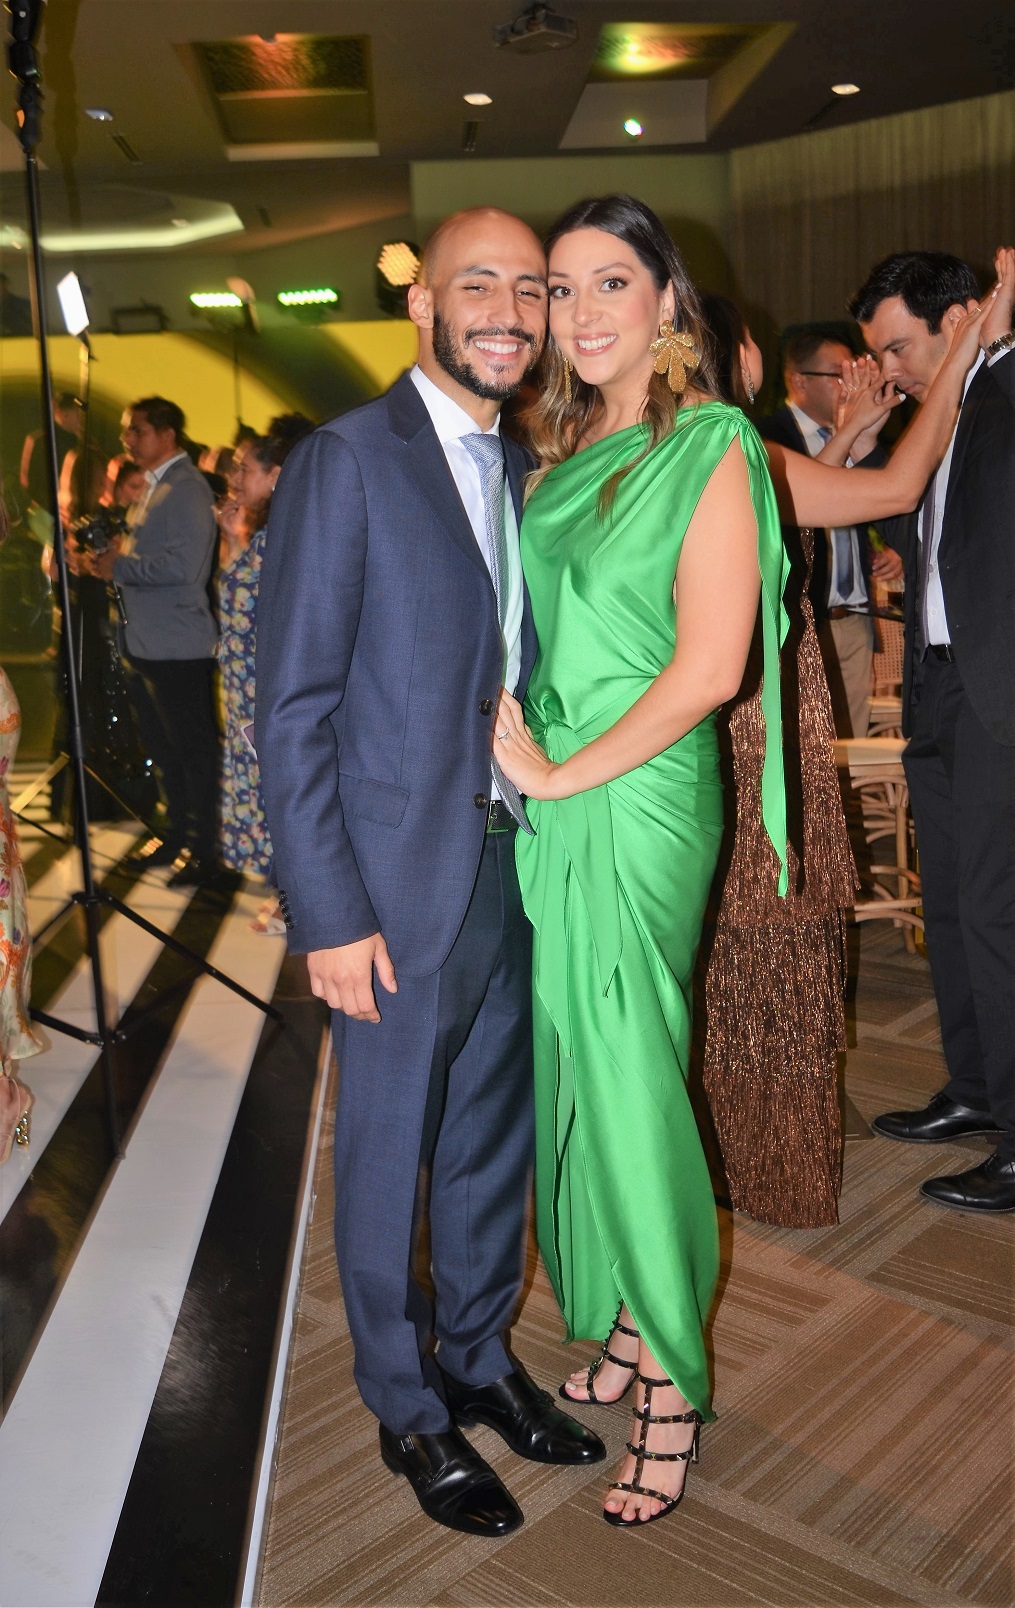 La boda de Gigi Ferez y Renán Núñez… de esencia romántica y elegancia de ensueño